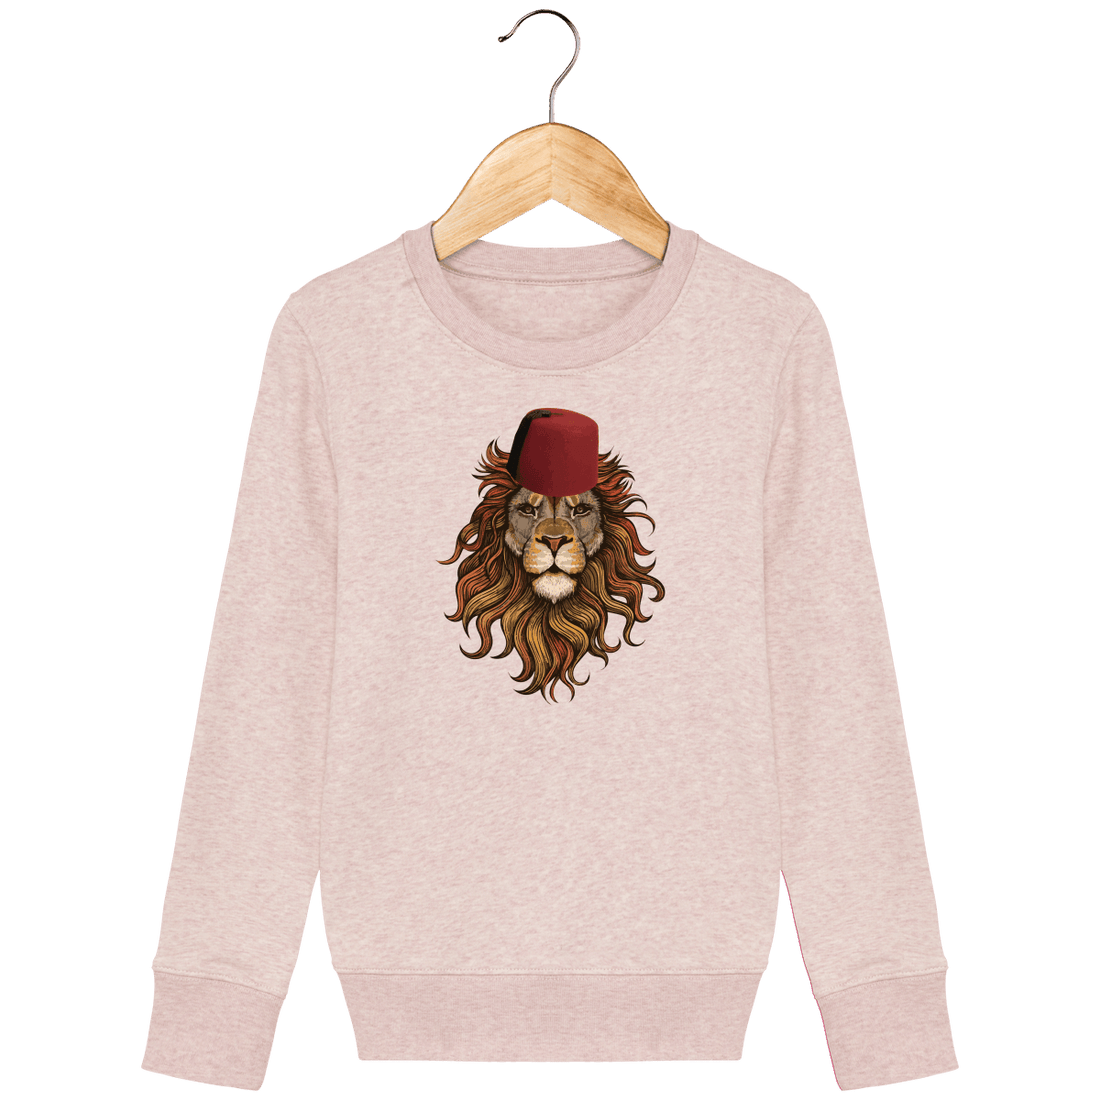 Enfant & Bébé>Sweatshirts - Sweat Enfant Lion De L'Atlas Maroc